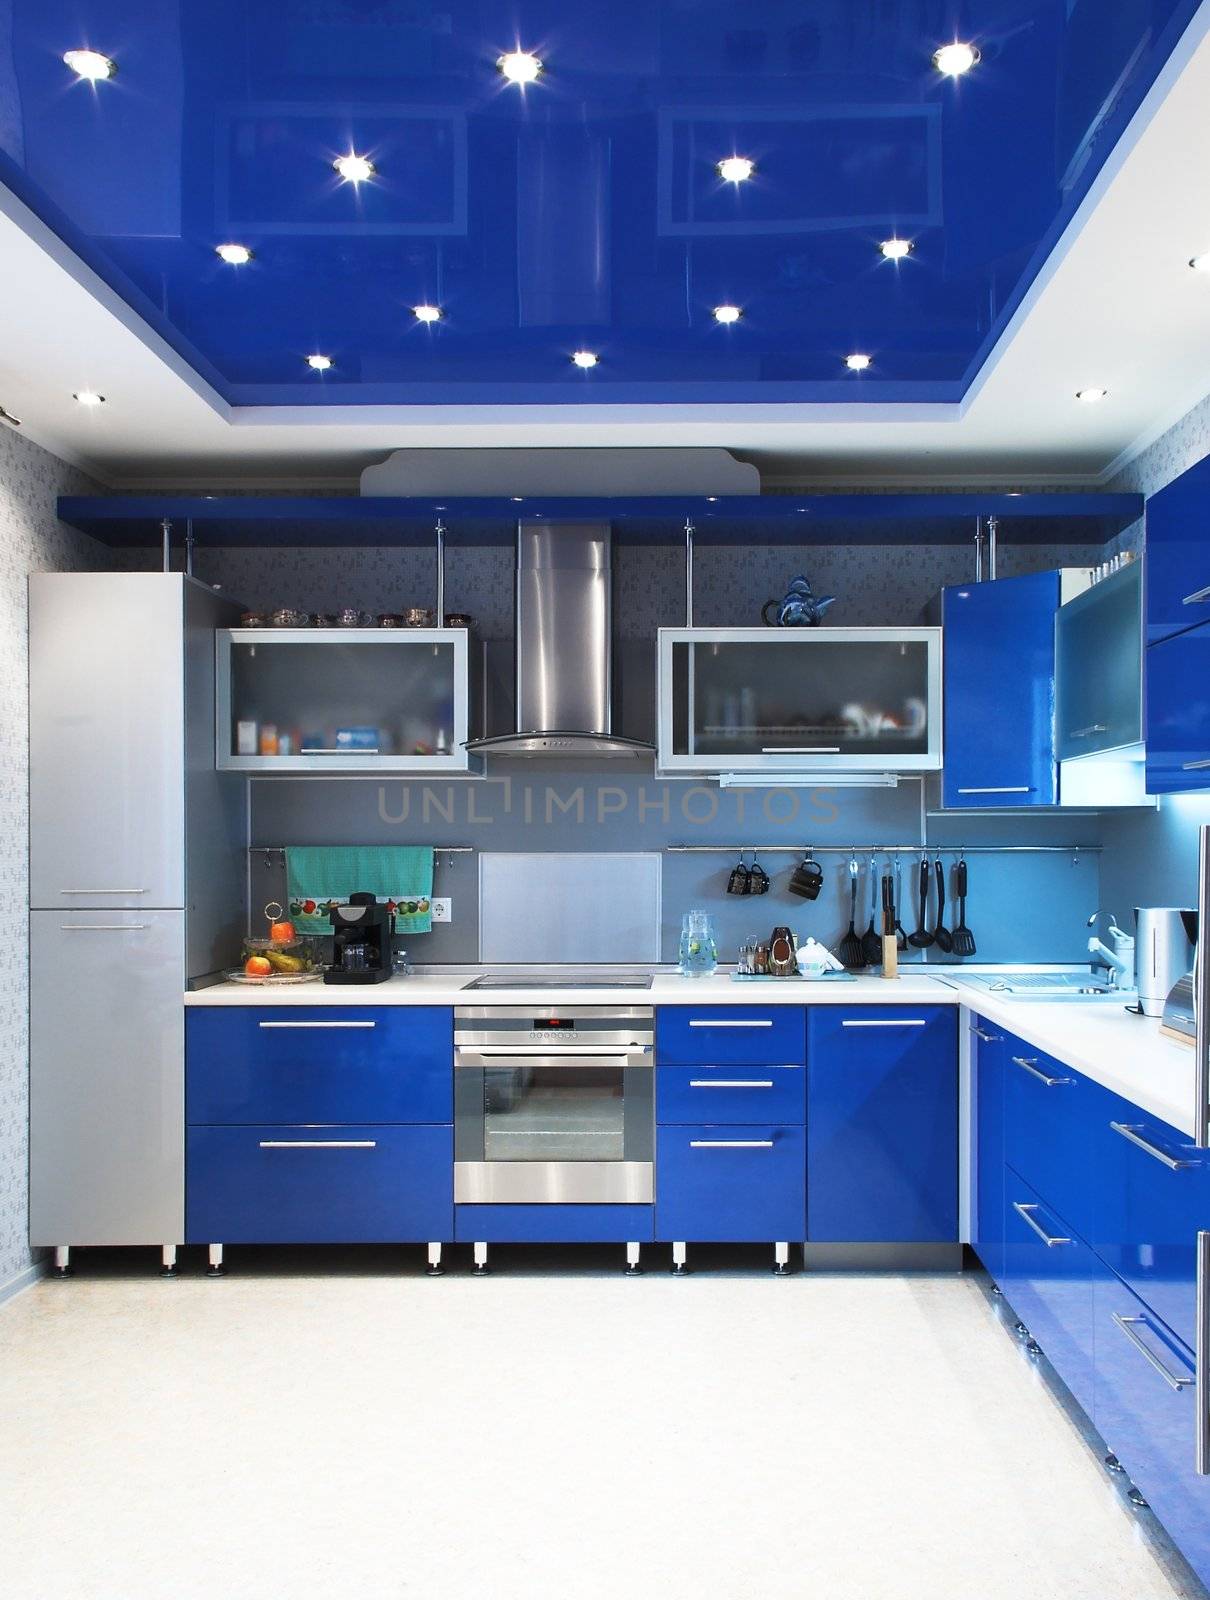 Modern kitchen interior in blue by palomnik